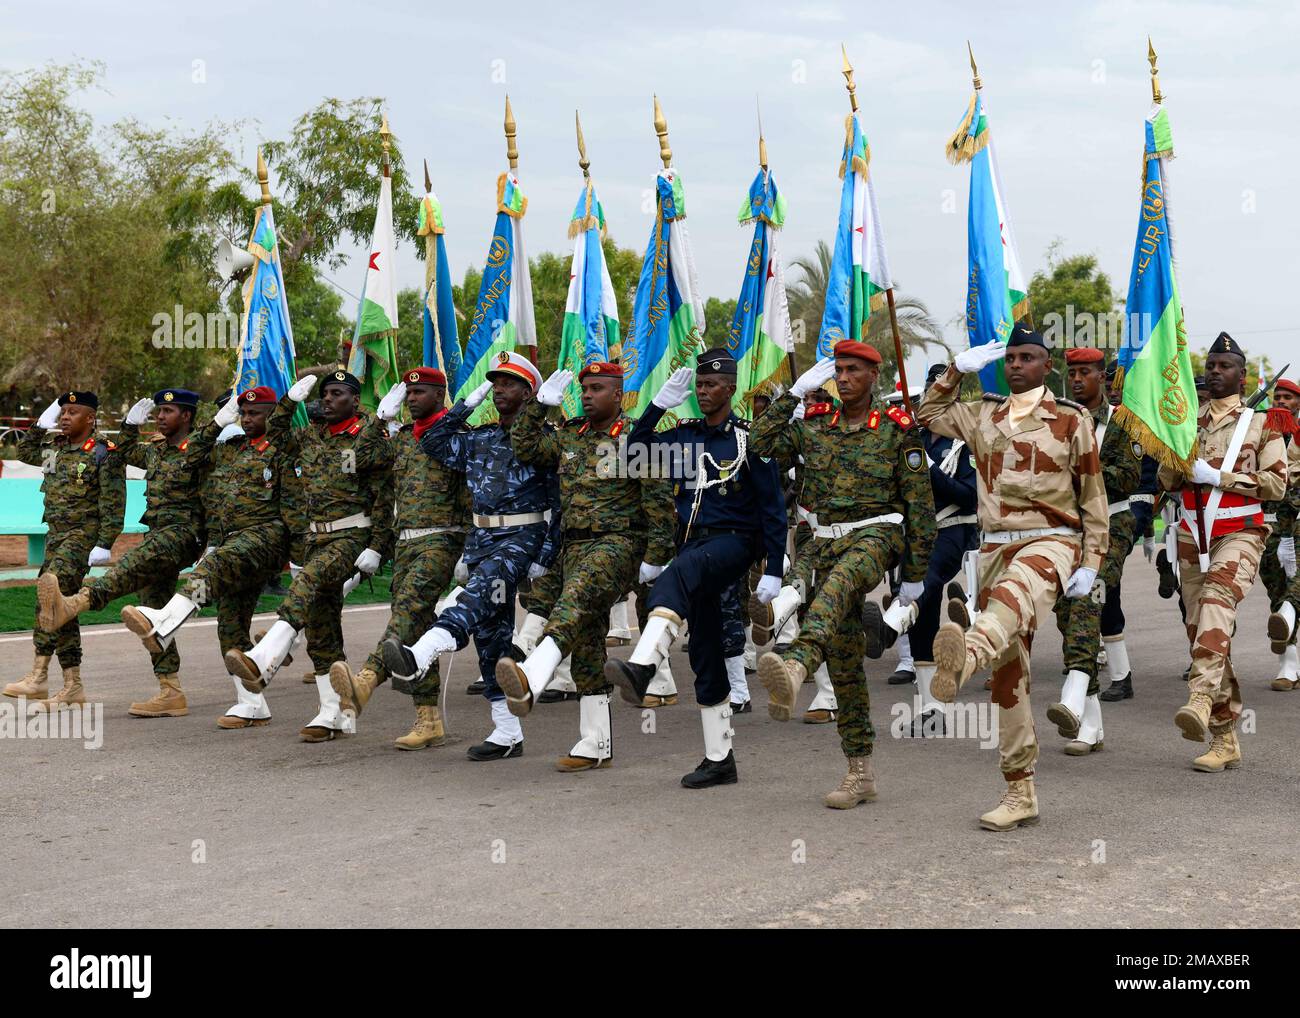 ÉTATS-UNIS Le général de division de l'armée Jami Shawley, commandant général de la Force opérationnelle interarmées combinée de la Corne de l'Afrique (CJTF-HOA), a assisté à une cérémonie à l'occasion de l'anniversaire 45th des Forces armées de Djibouti (DAF), à 6 juin 2022. Banque D'Images